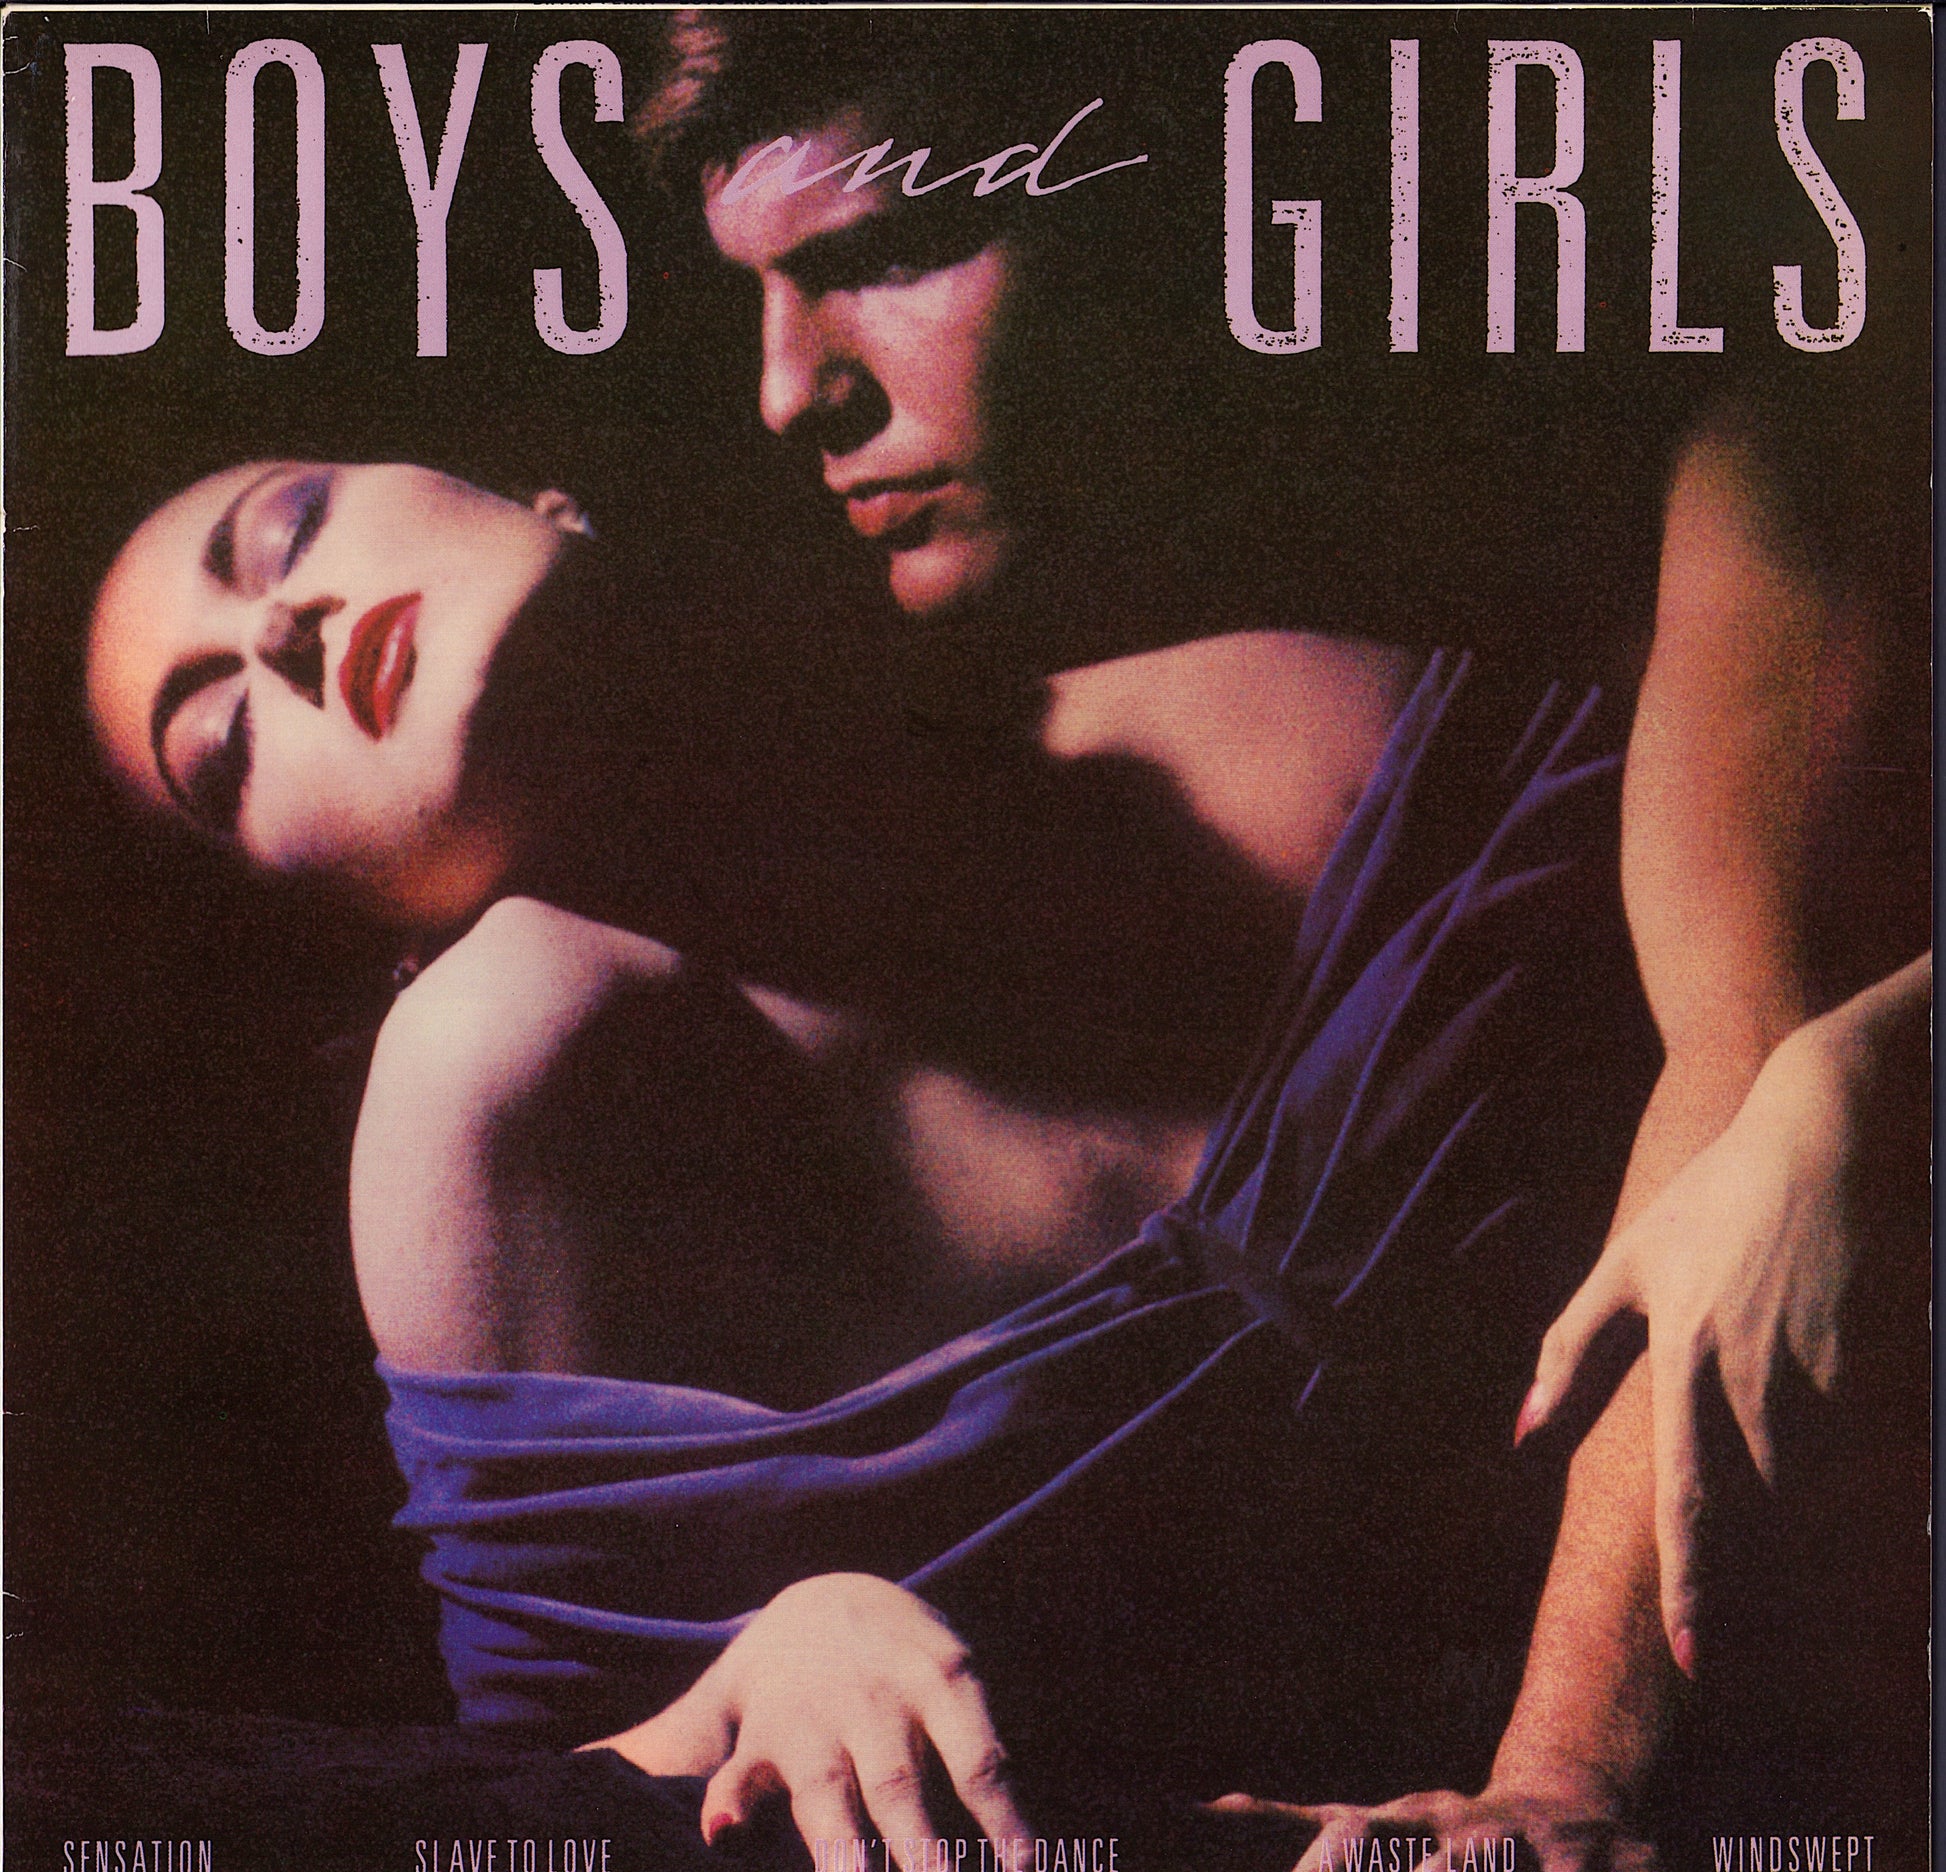 Bryan Ferry ‎- Boys and Girls Vinyl LP Club Edition